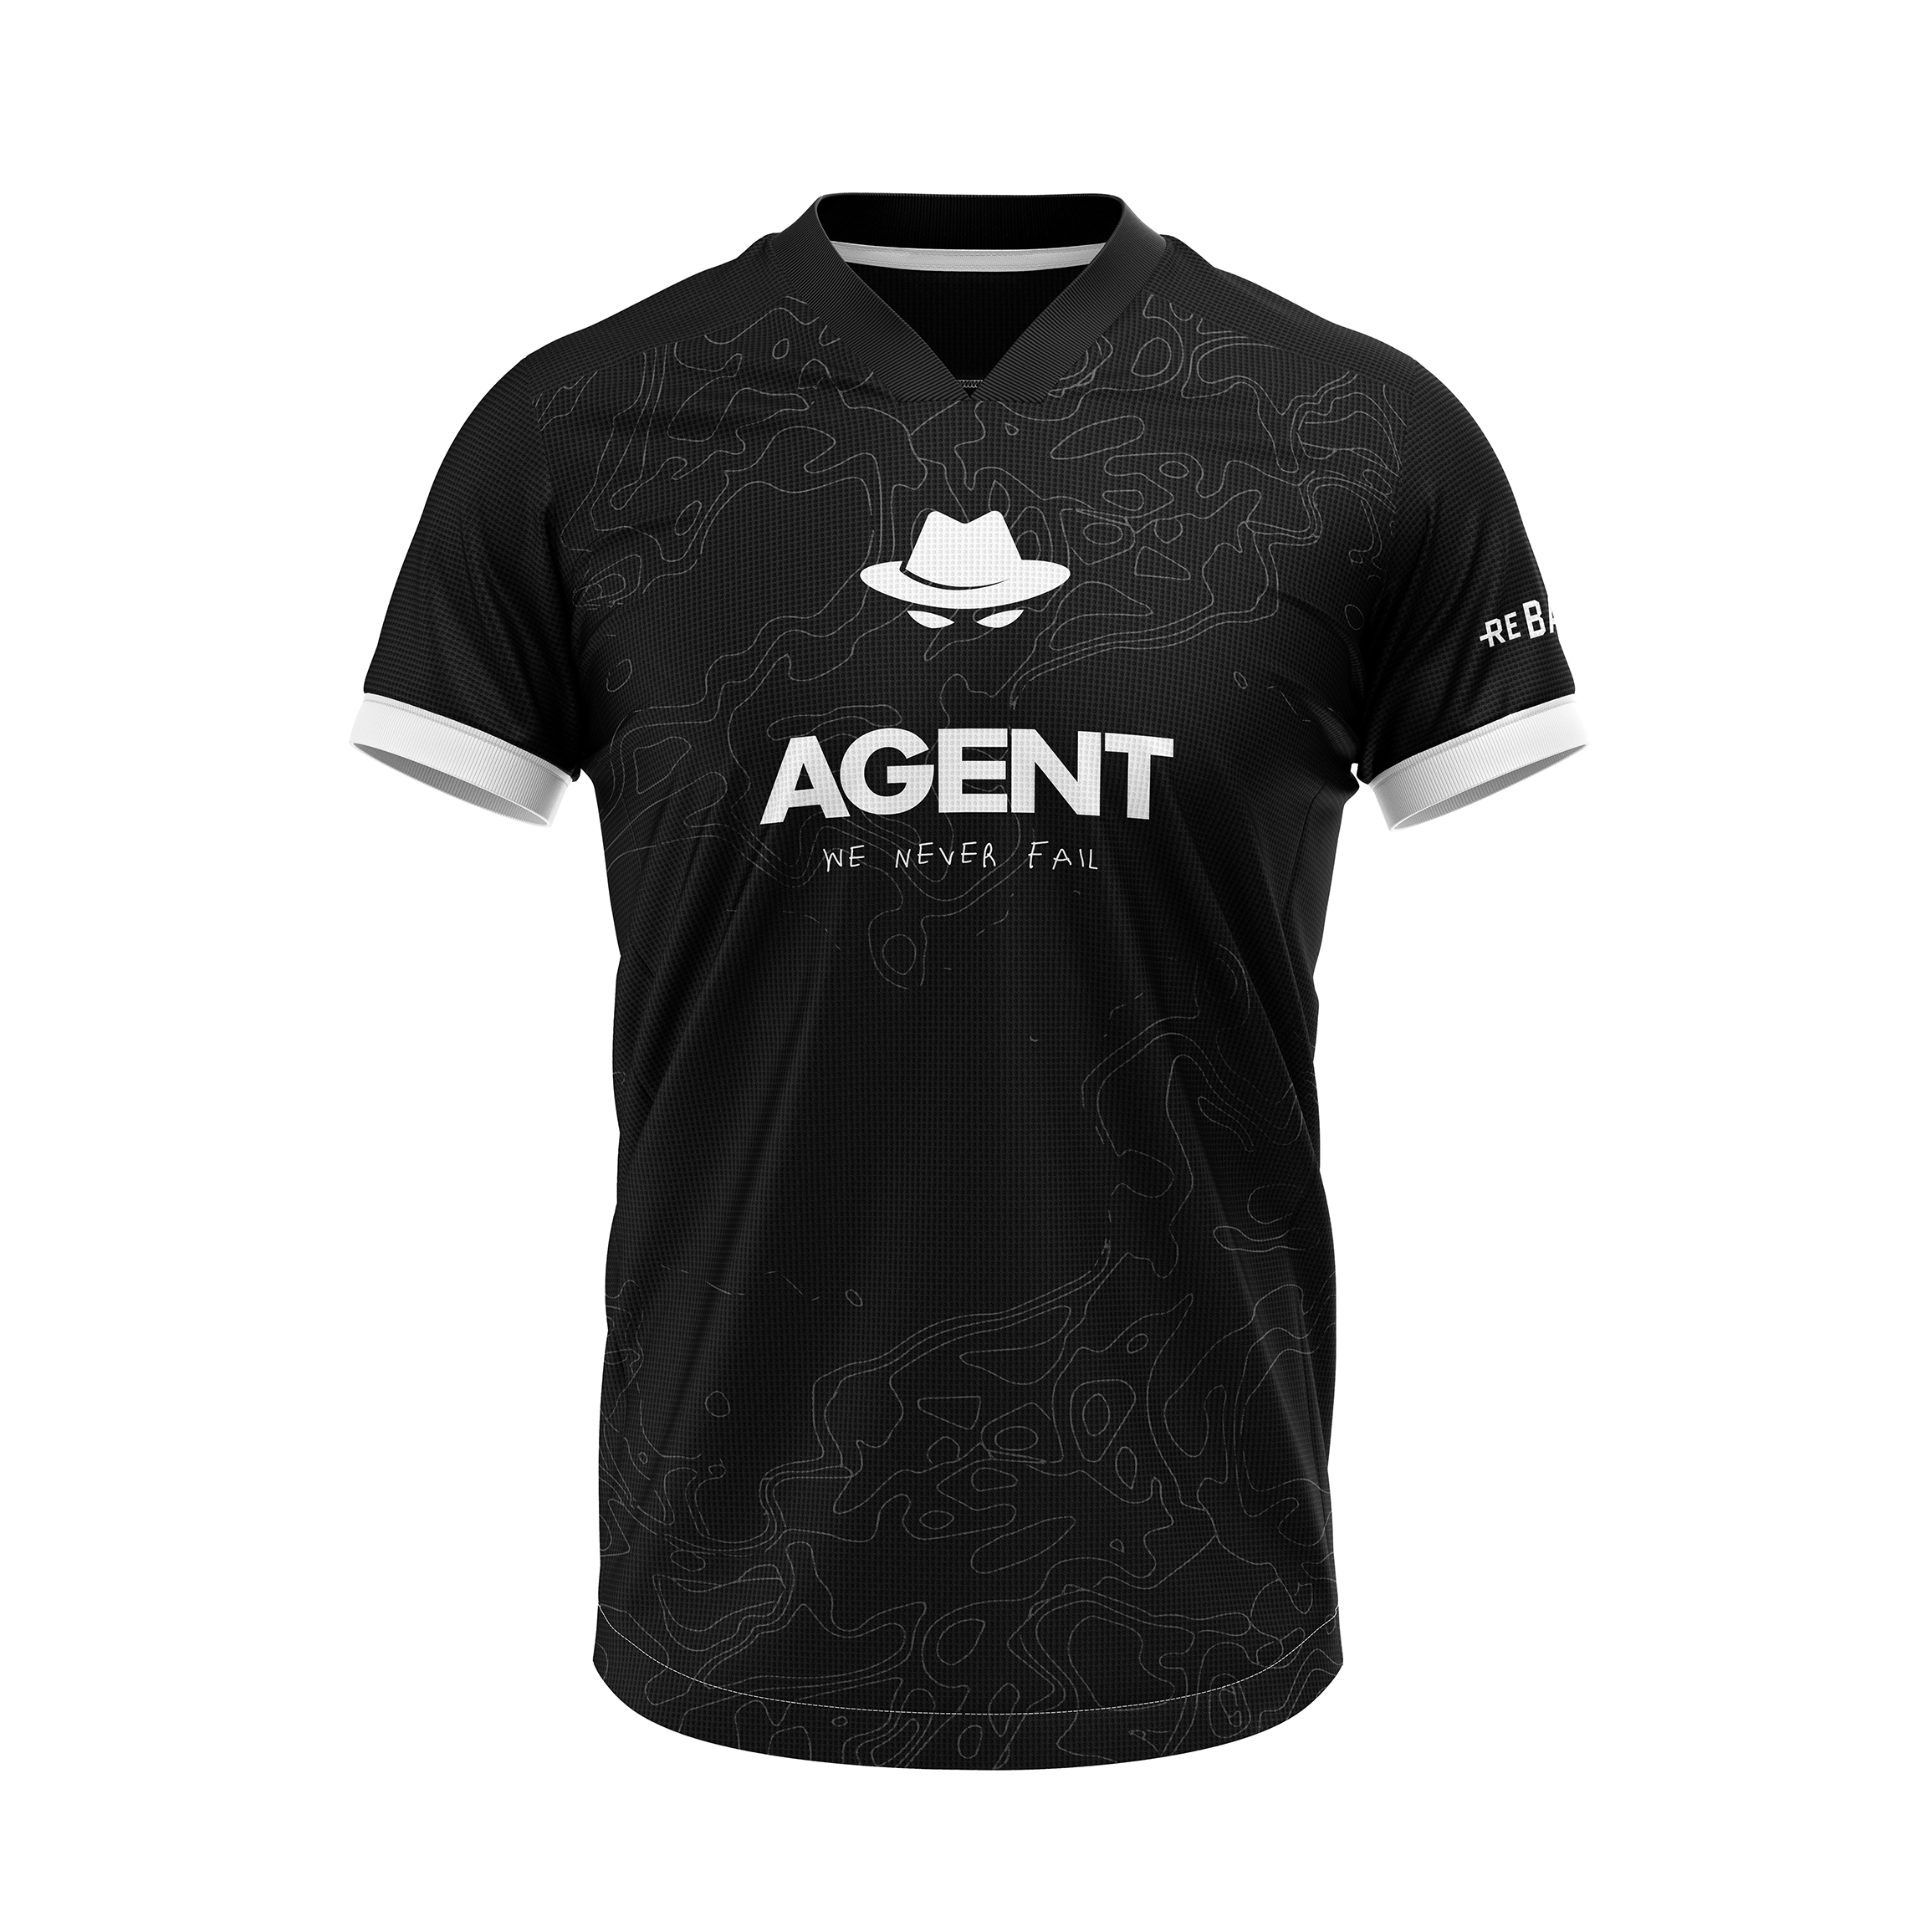 Agent Player Replica Jersey - Original